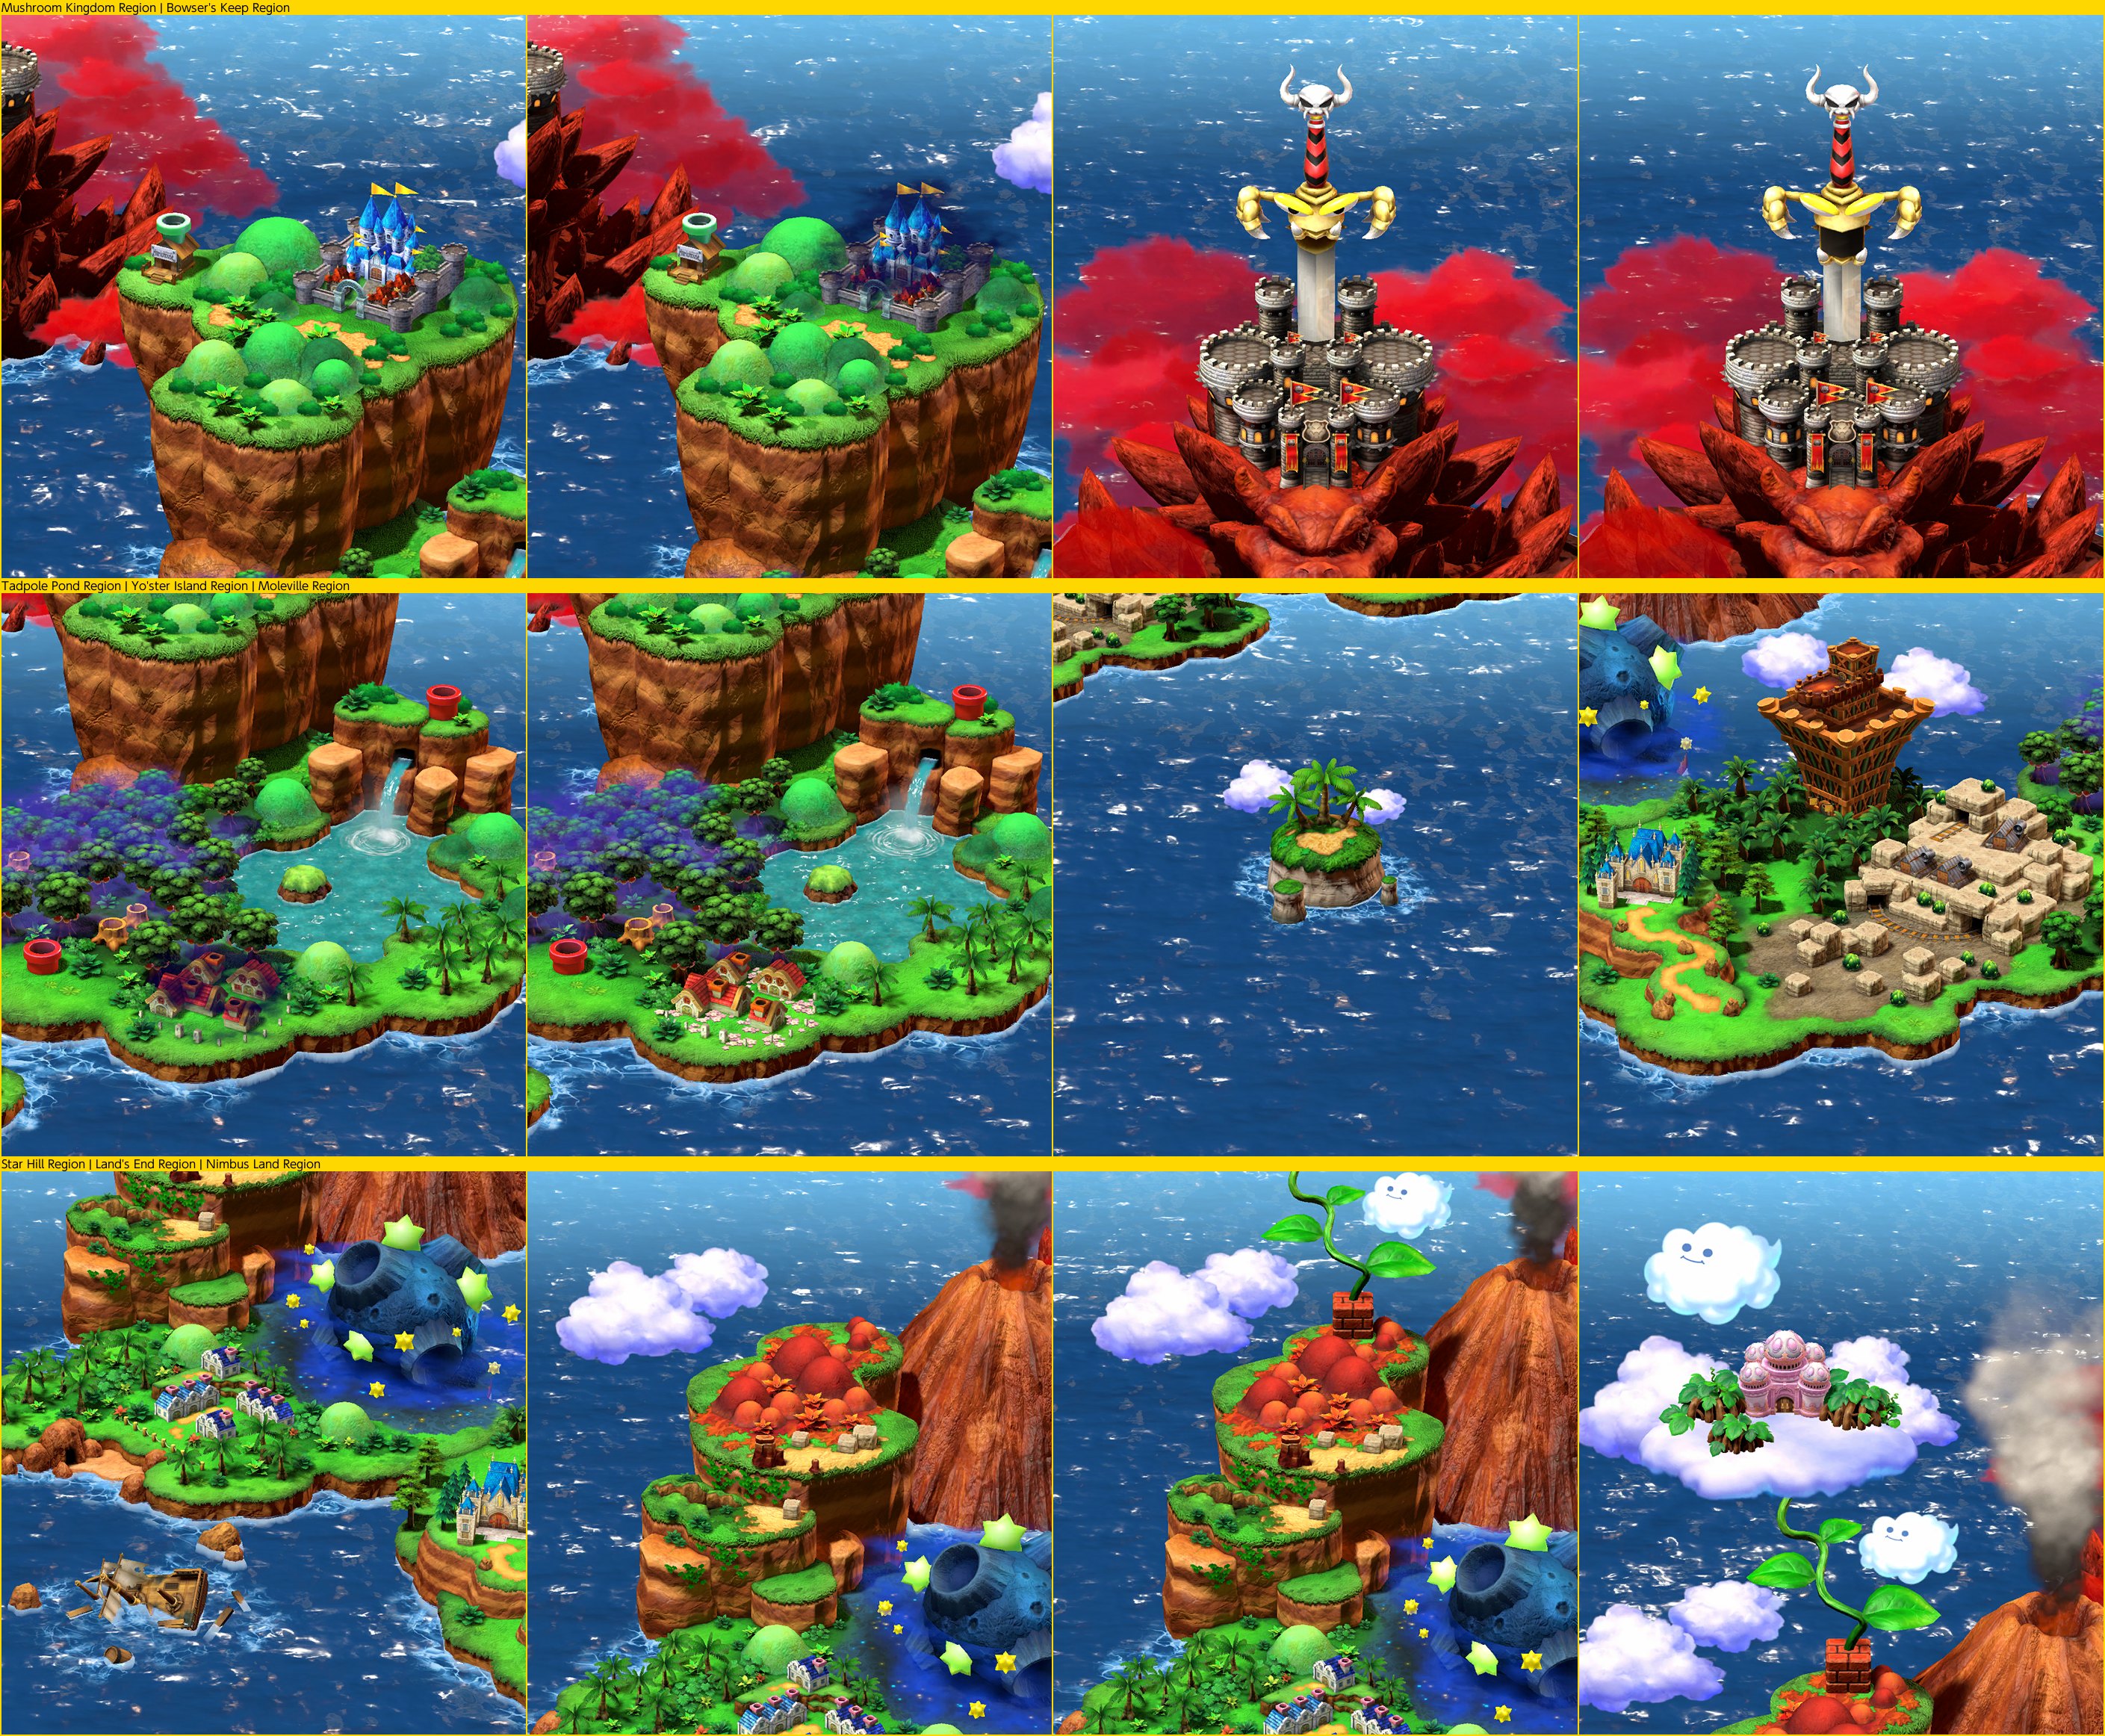 Super Mario RPG - Main Menu - Map Sections